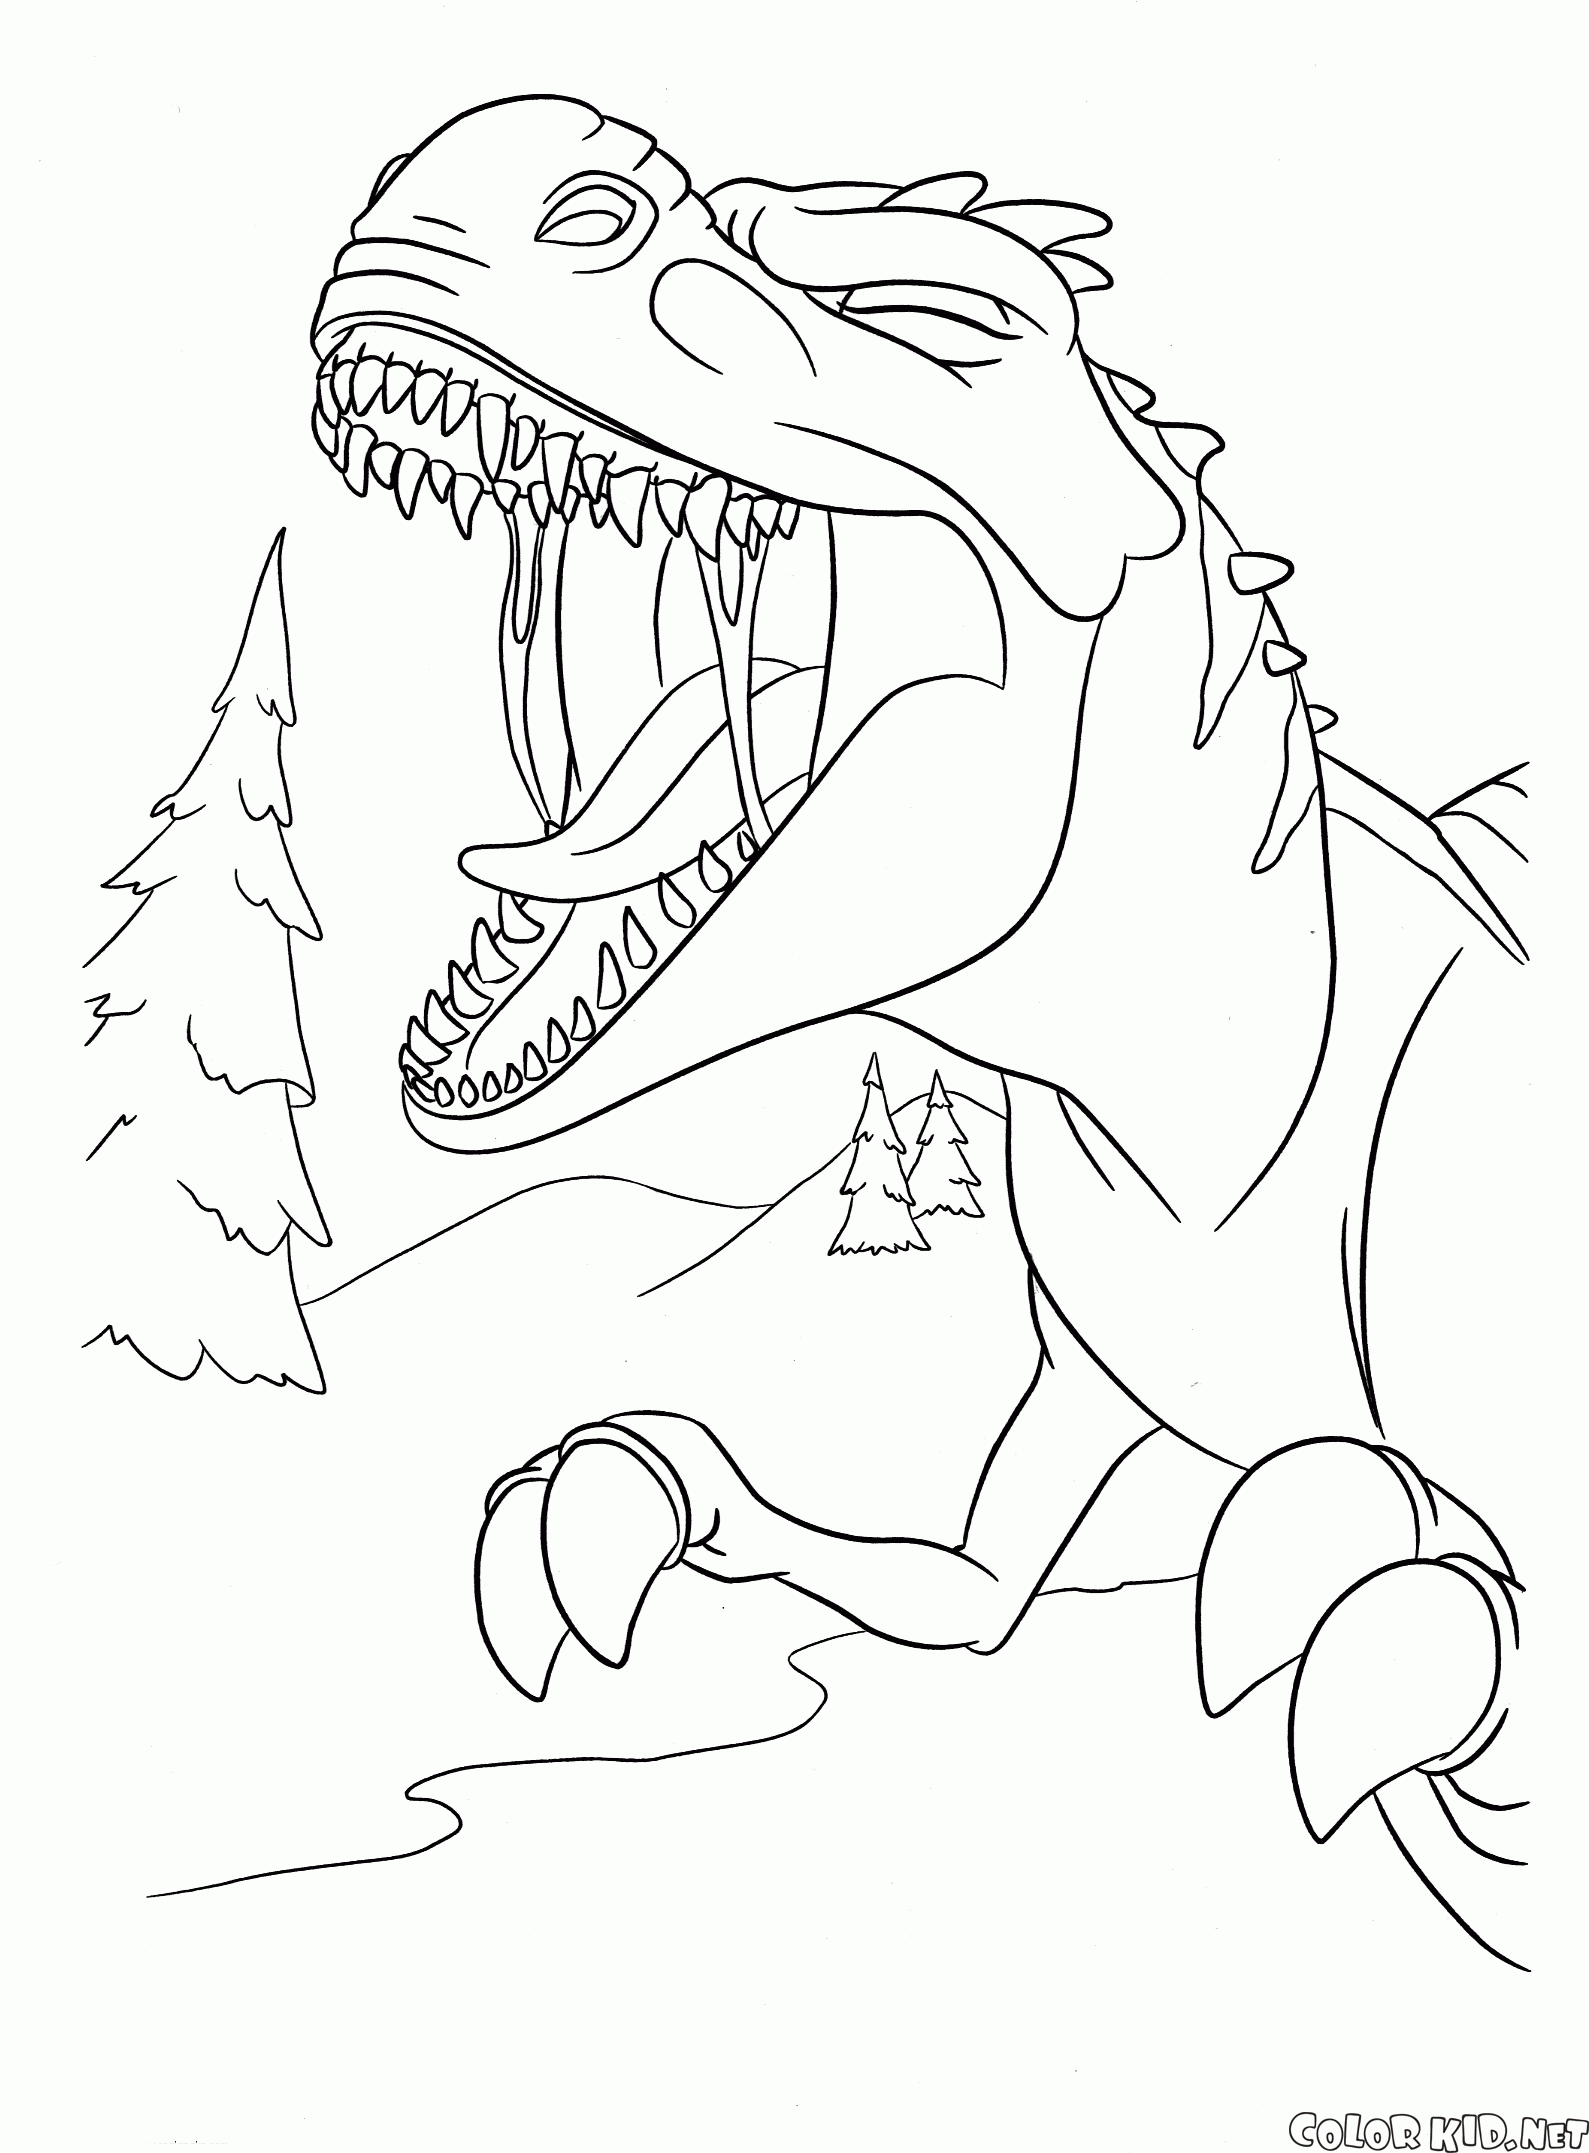 Dinosaurs loud roar